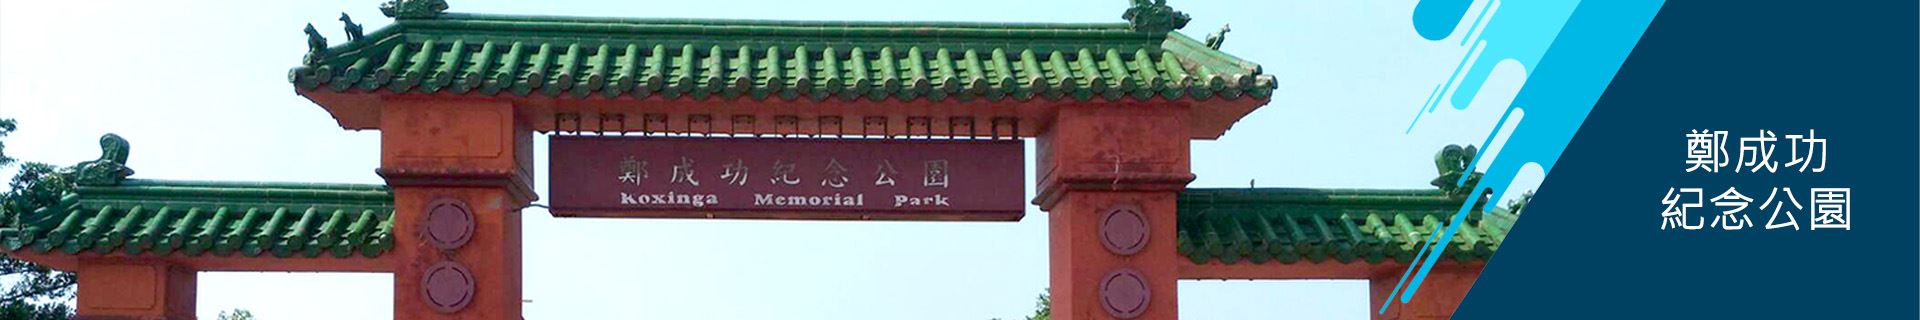 安南區公所-鄭成功紀念公園